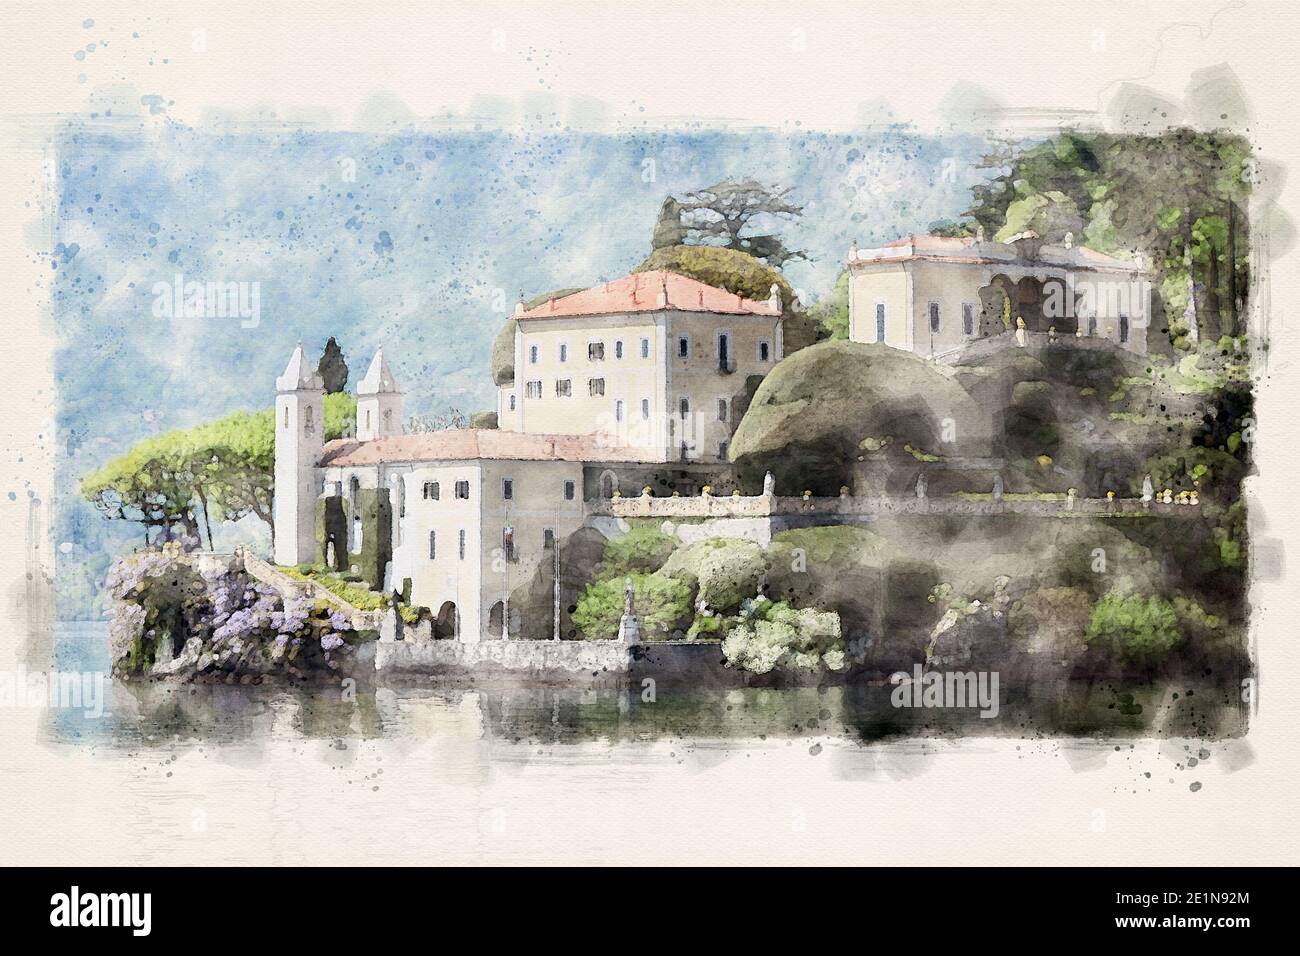 Villa del Balbianello à Lenno, Lombardie, surplombant le lac de Côme dans le nord de l'Italie. Aquarelle Illustration. Banque D'Images